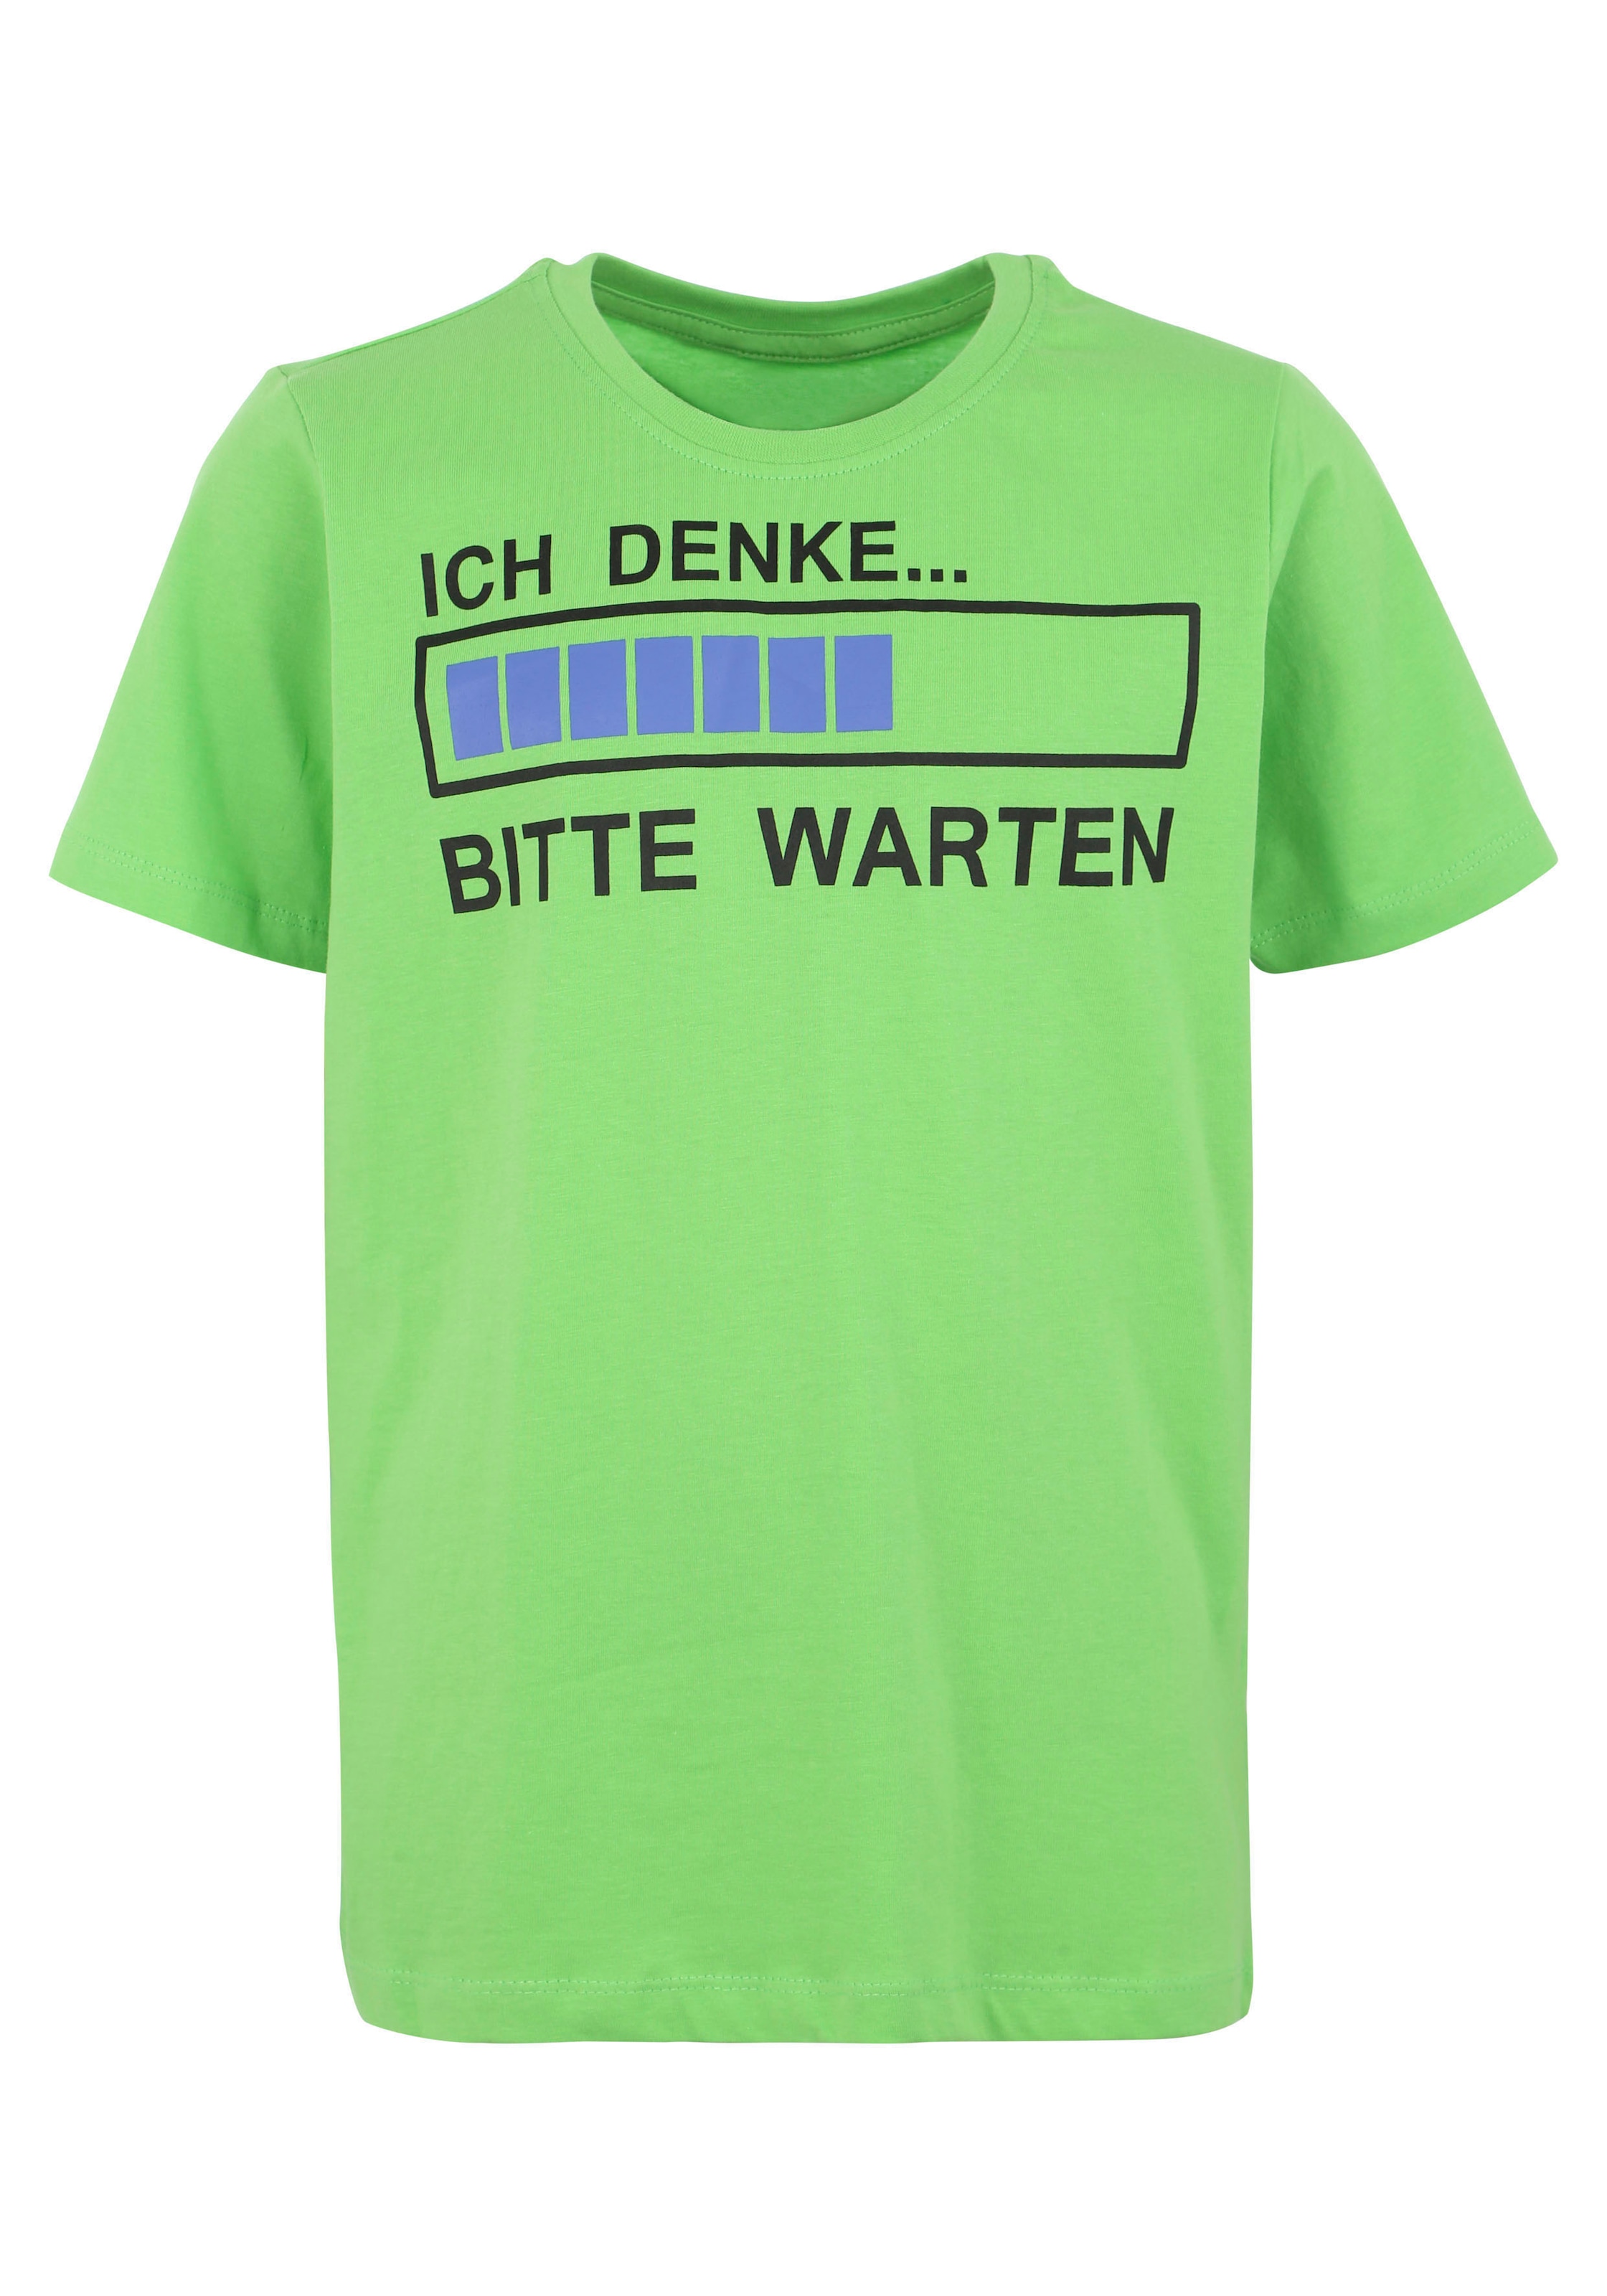 | WARTEN«, ordern Jelmoli-Versand T-Shirt Spruch DENKE...BITTE KIDSWORLD »ICH online